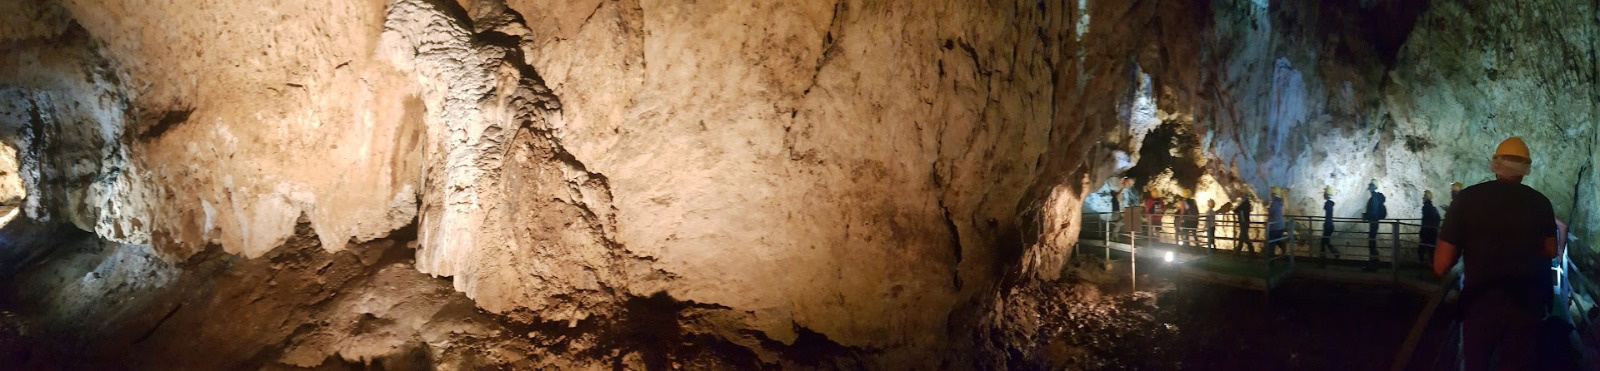 C'è una grotta sconosciuta alle porte di Roma con pitture rupestri e sculture naturali 1